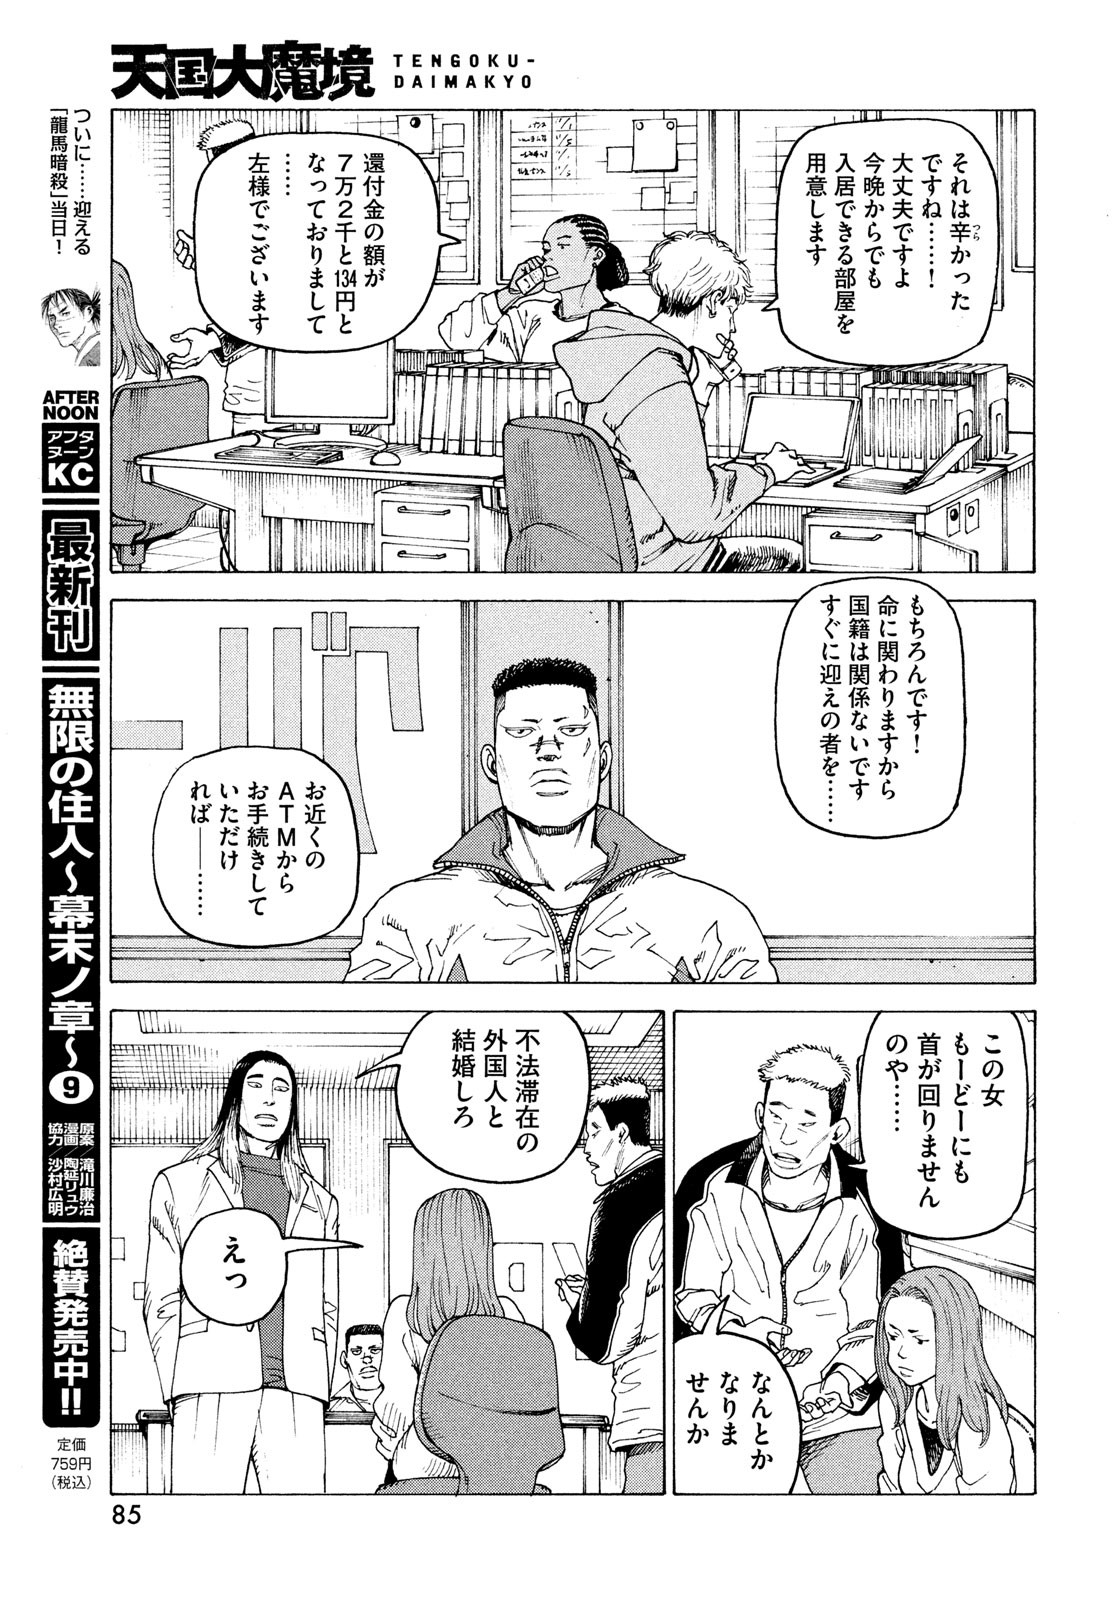 Tengoku Daimakyou - Chapter 59 - Page 15